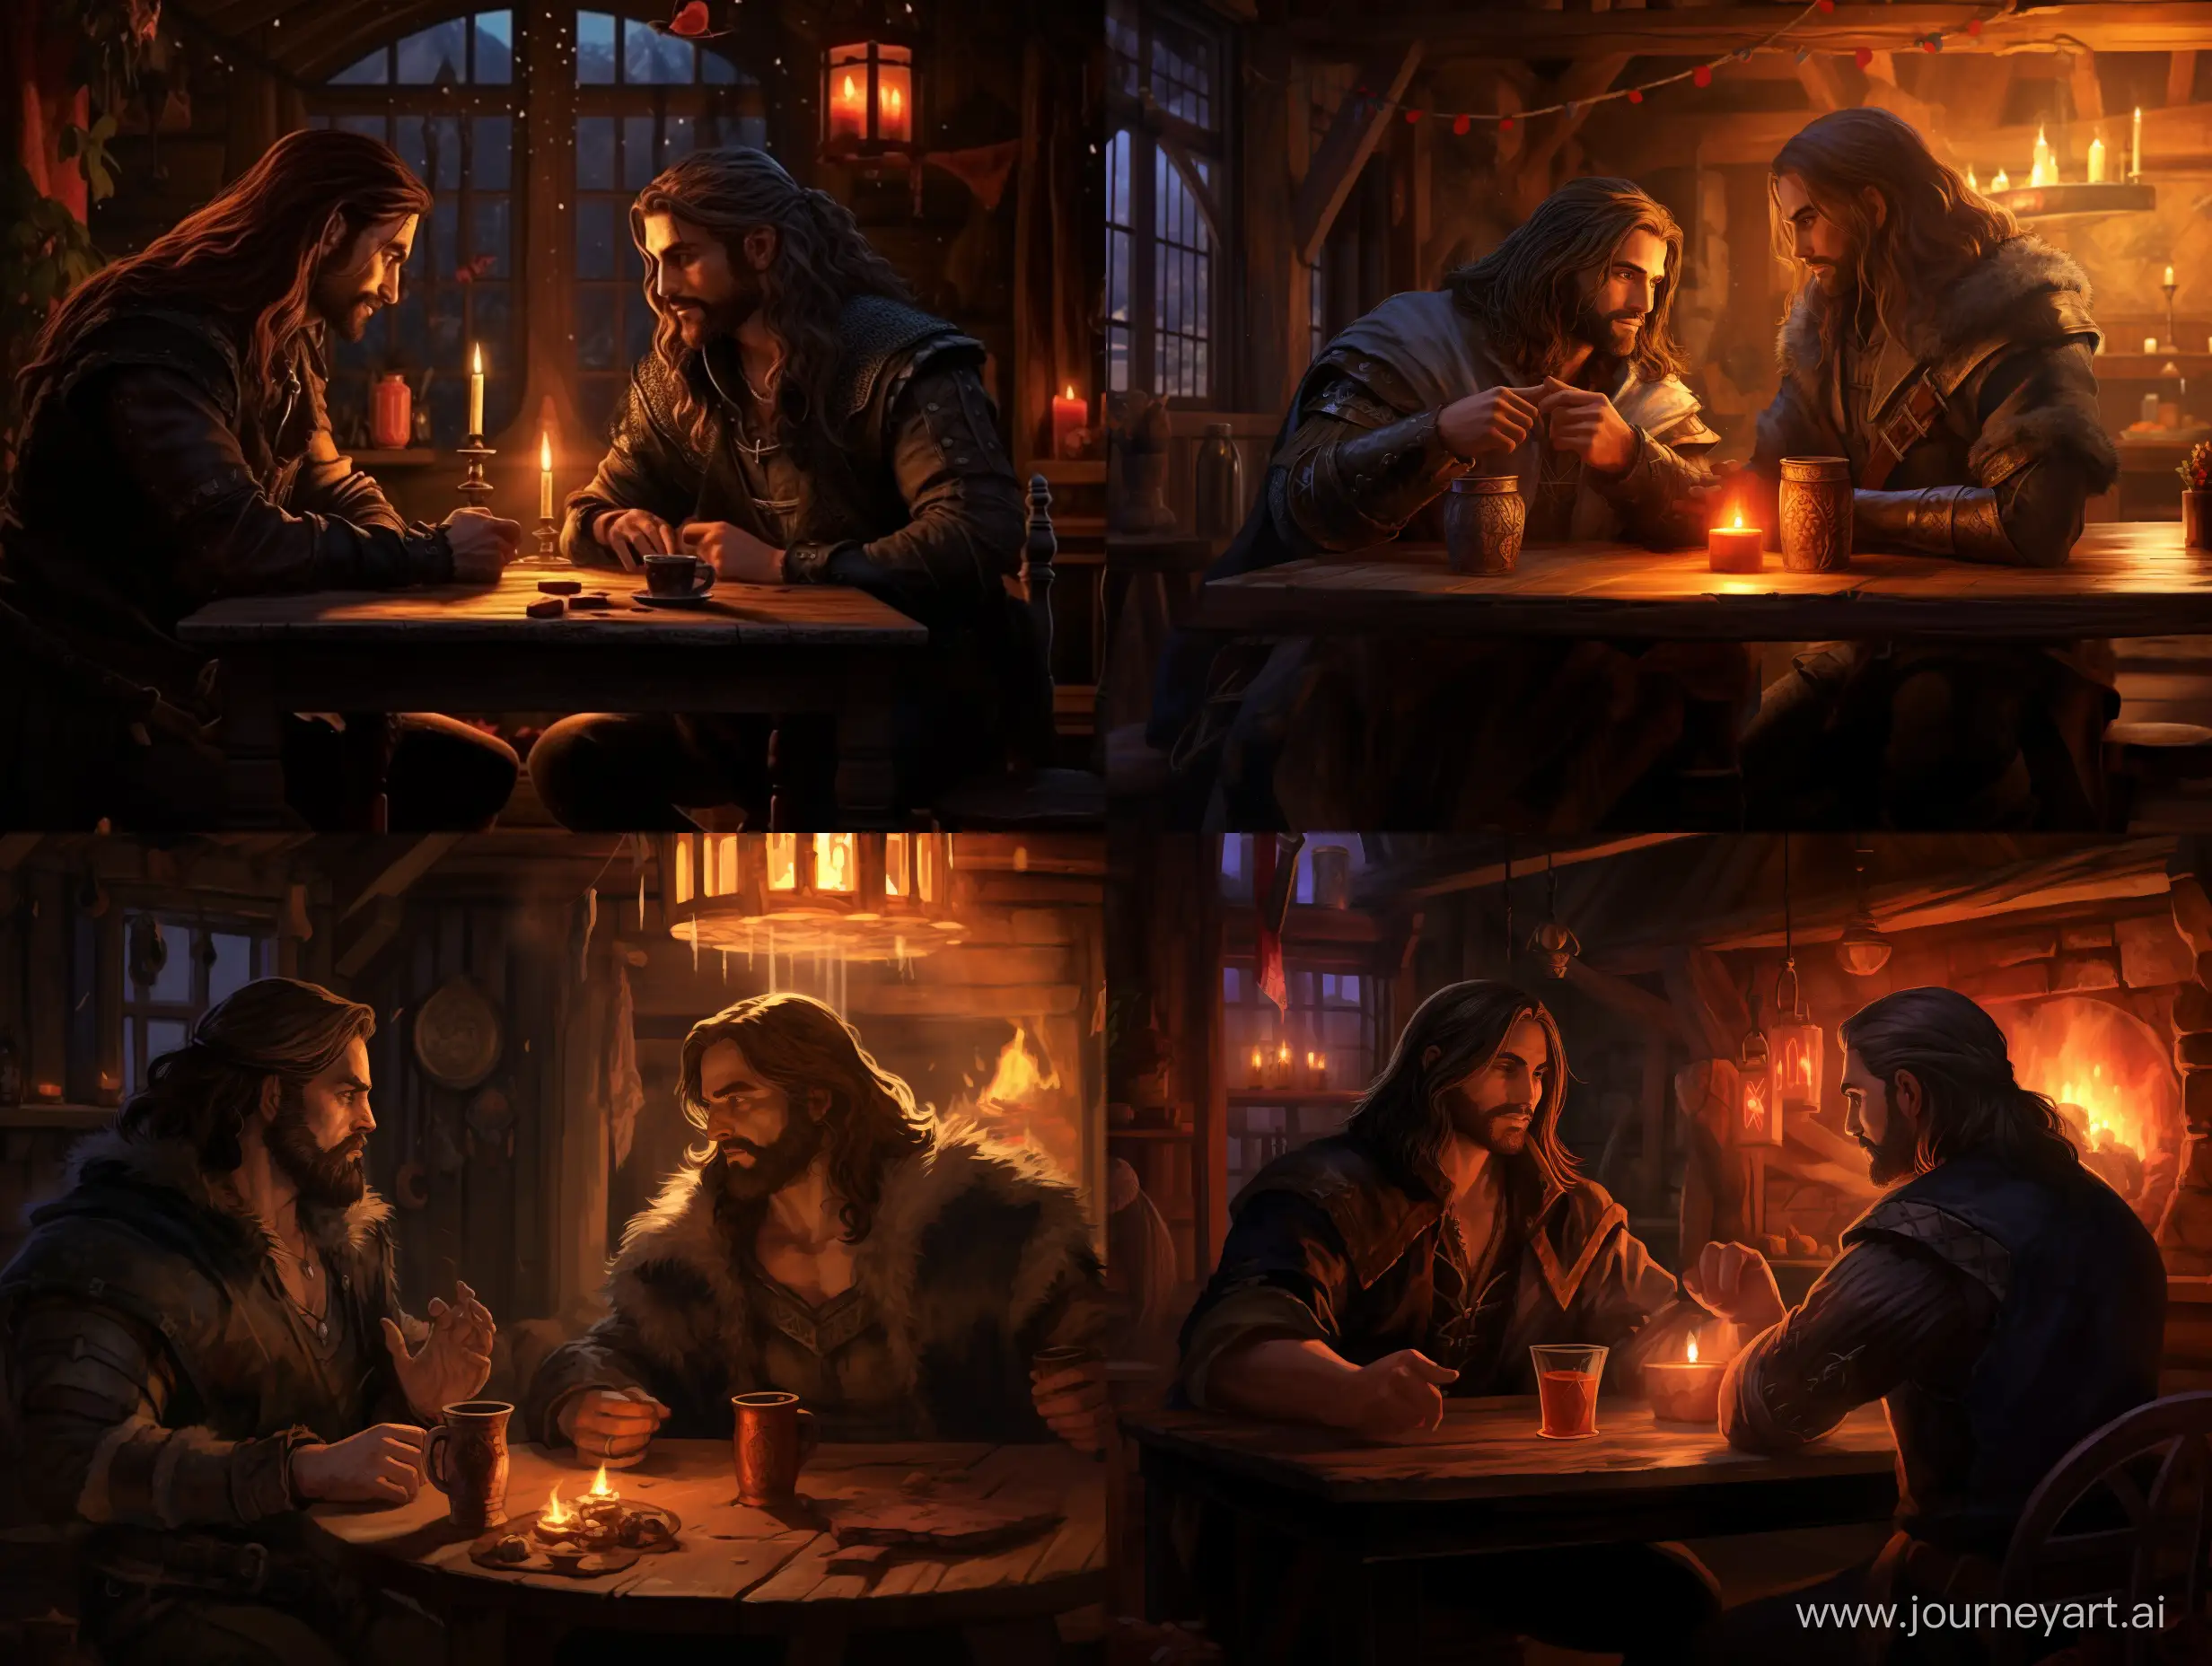 двое мужчин, один со светлыми длинными волосами, другой с гутсой чёрной бородой и длинными волосами, сидят друг напротив друга в таверне, стиль тёмного фентези, вечер, таверна освещена лёгким светом от свечей